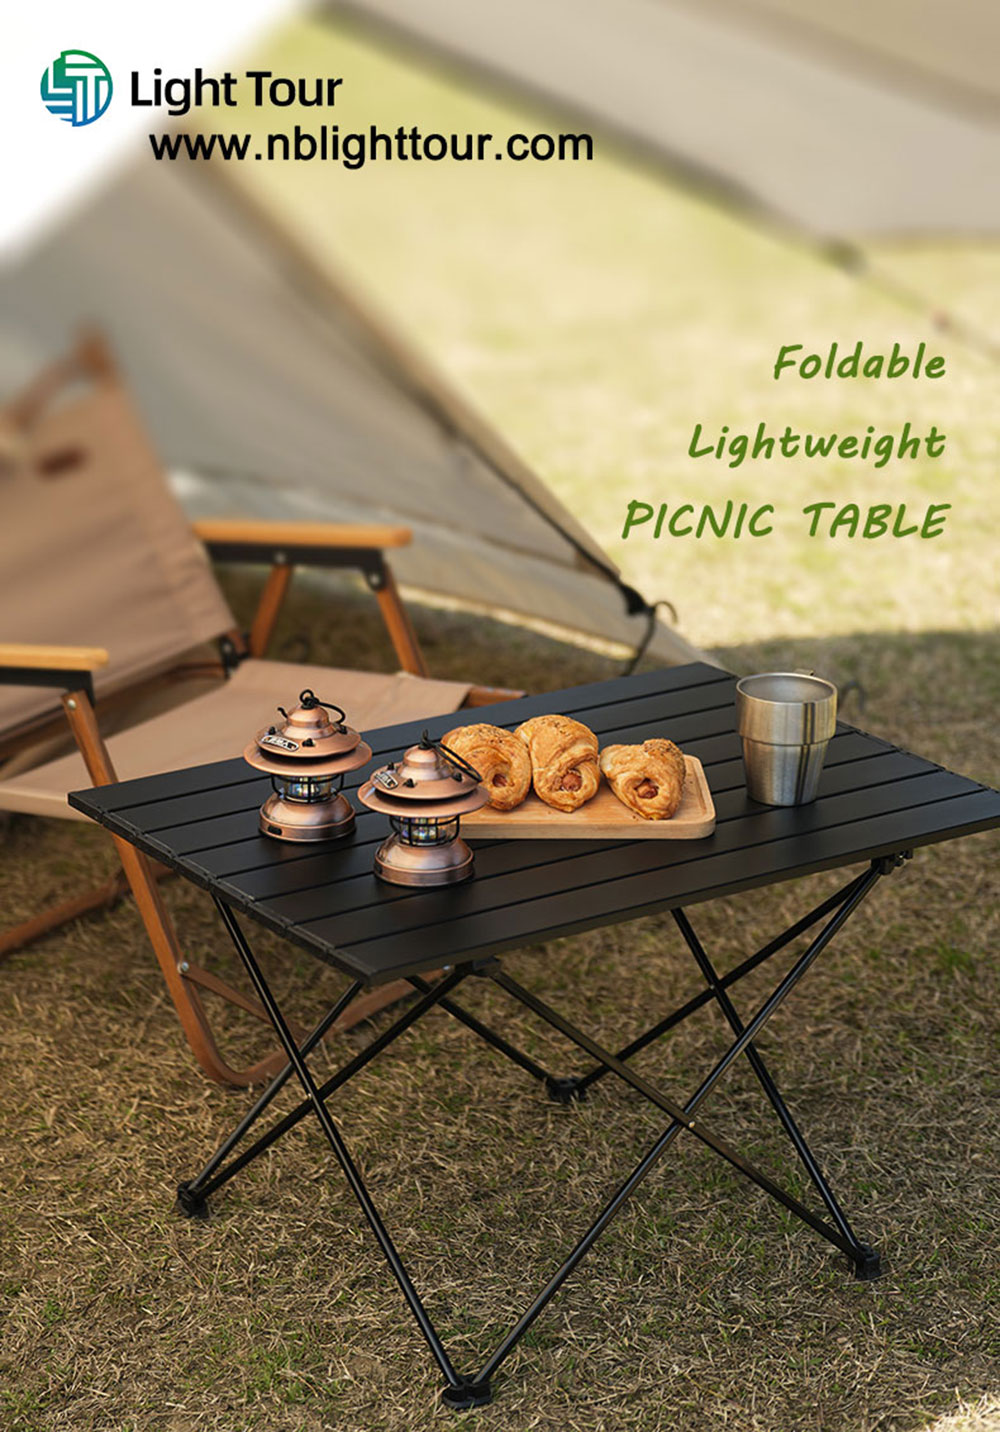 Hvordan kan der ikke være noget bord, når man holder picnic?